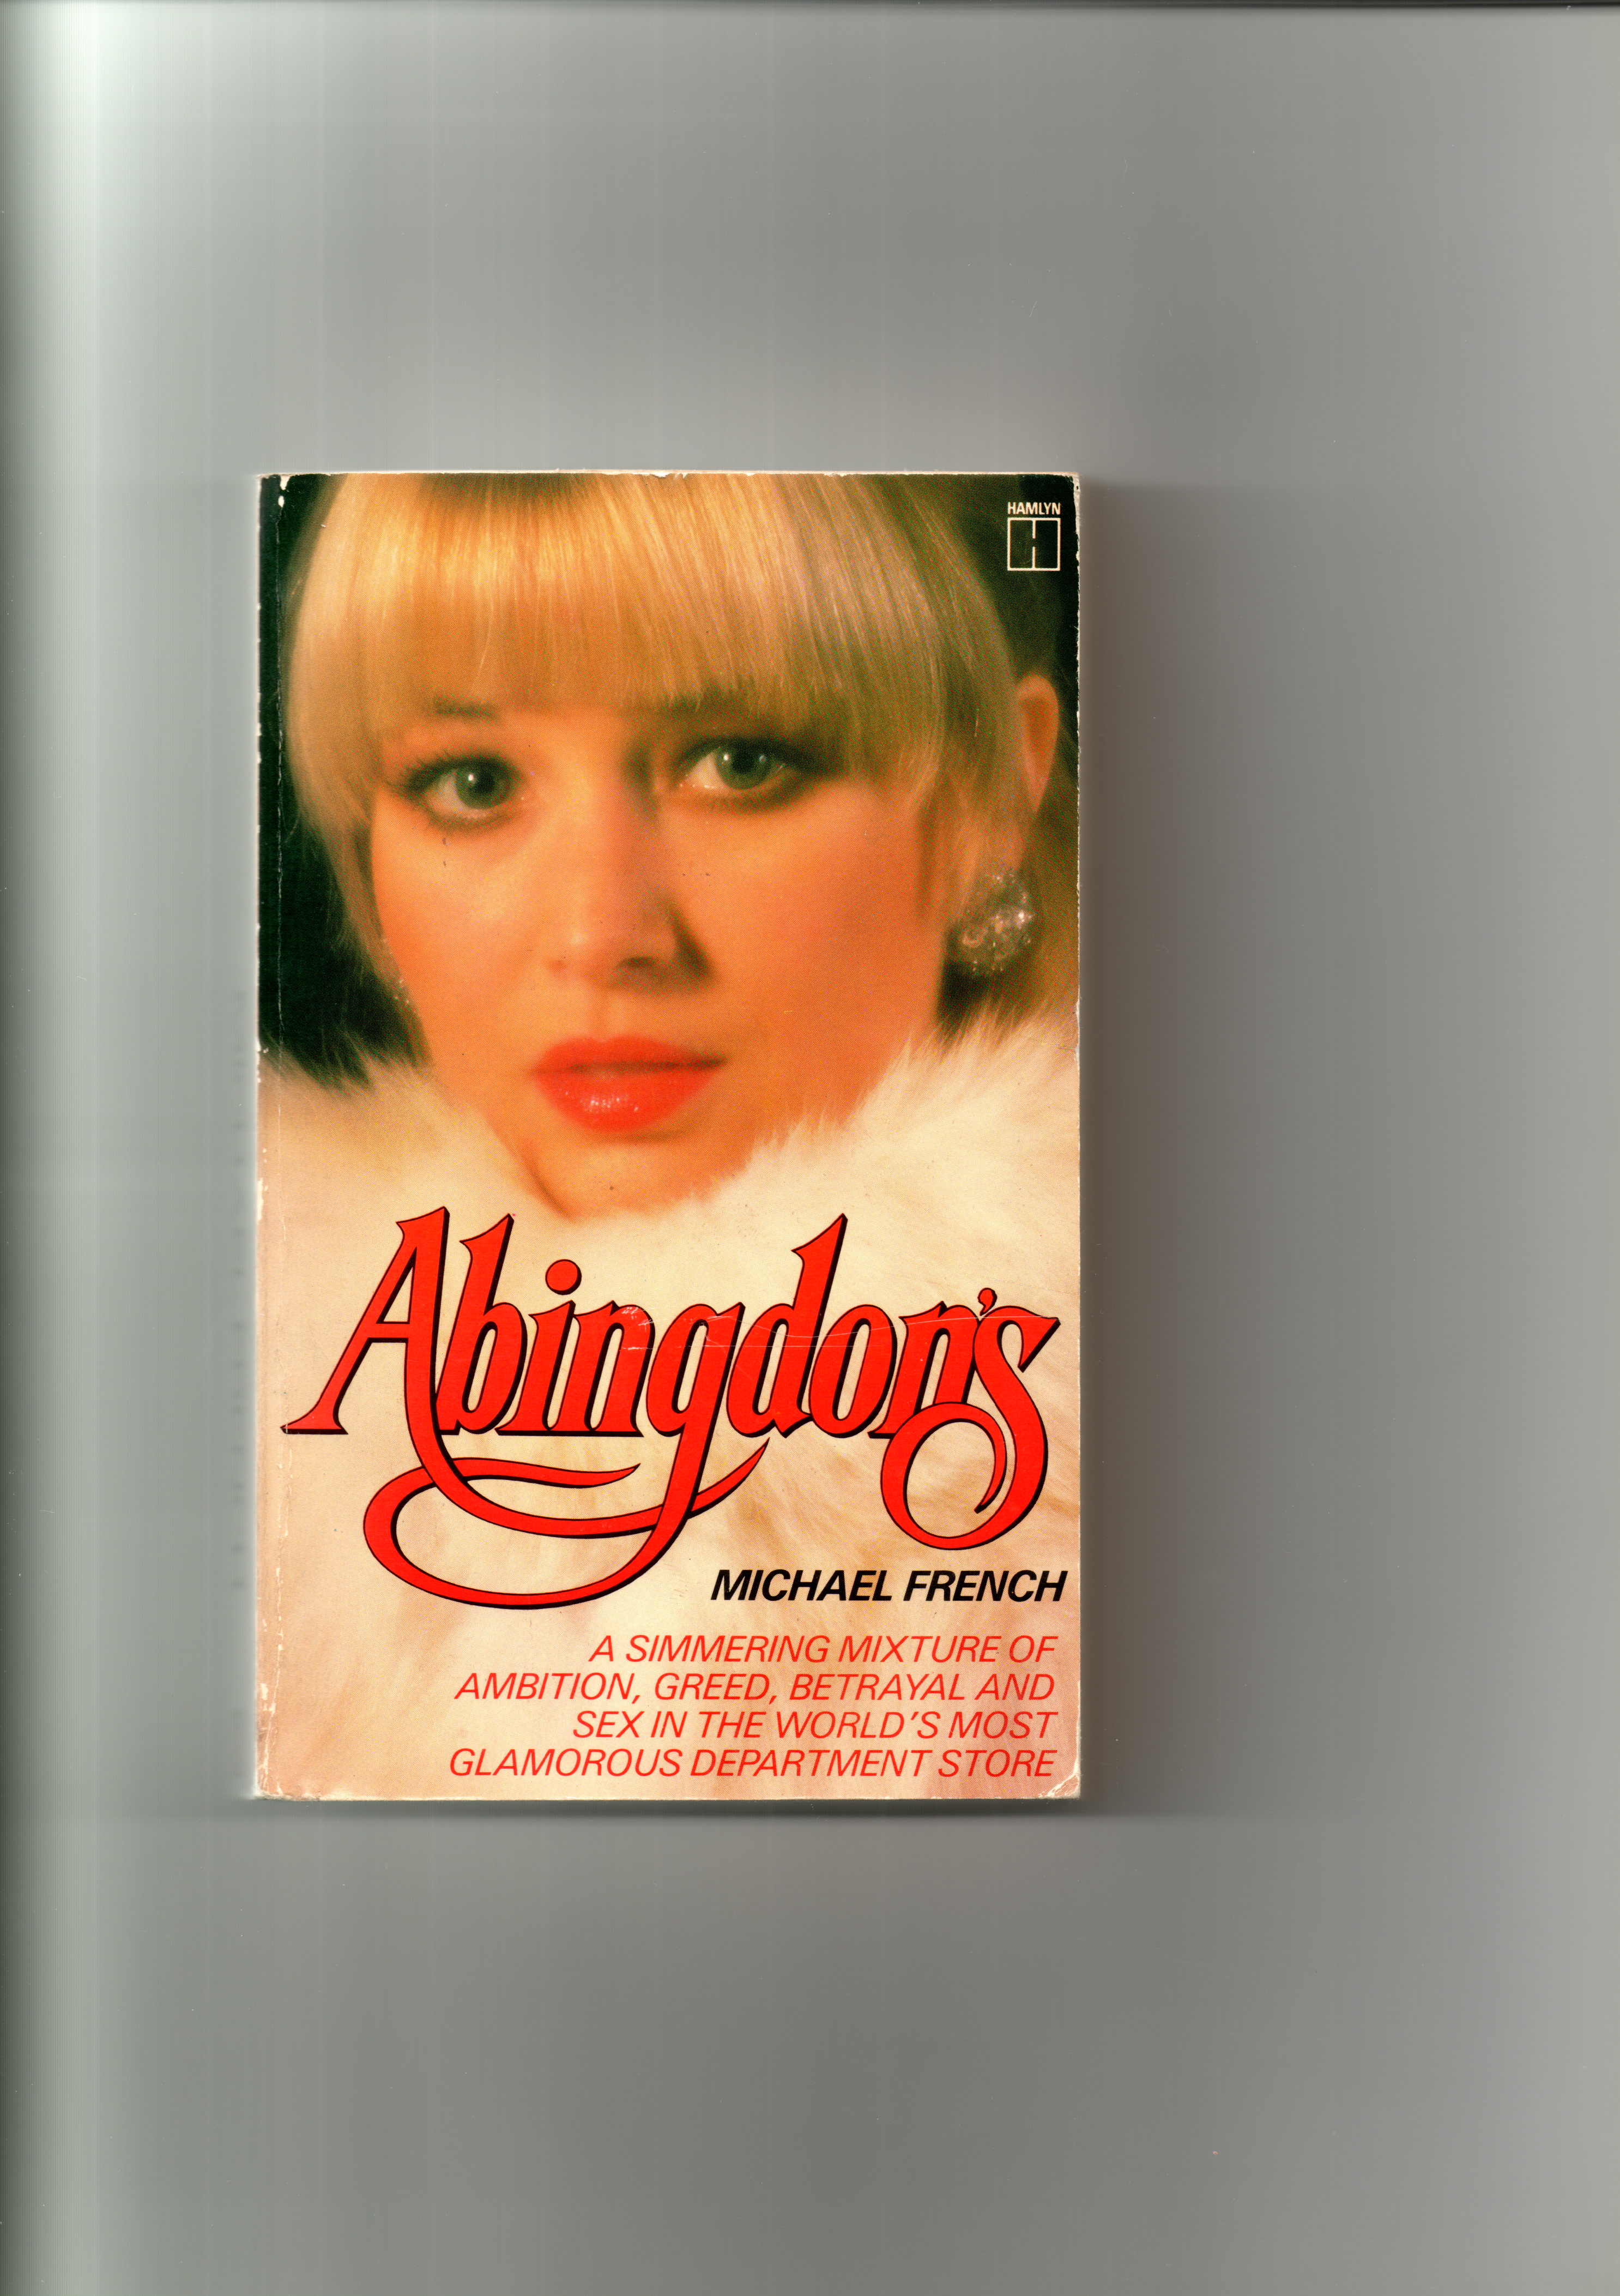 Abingdon's book cover 1979